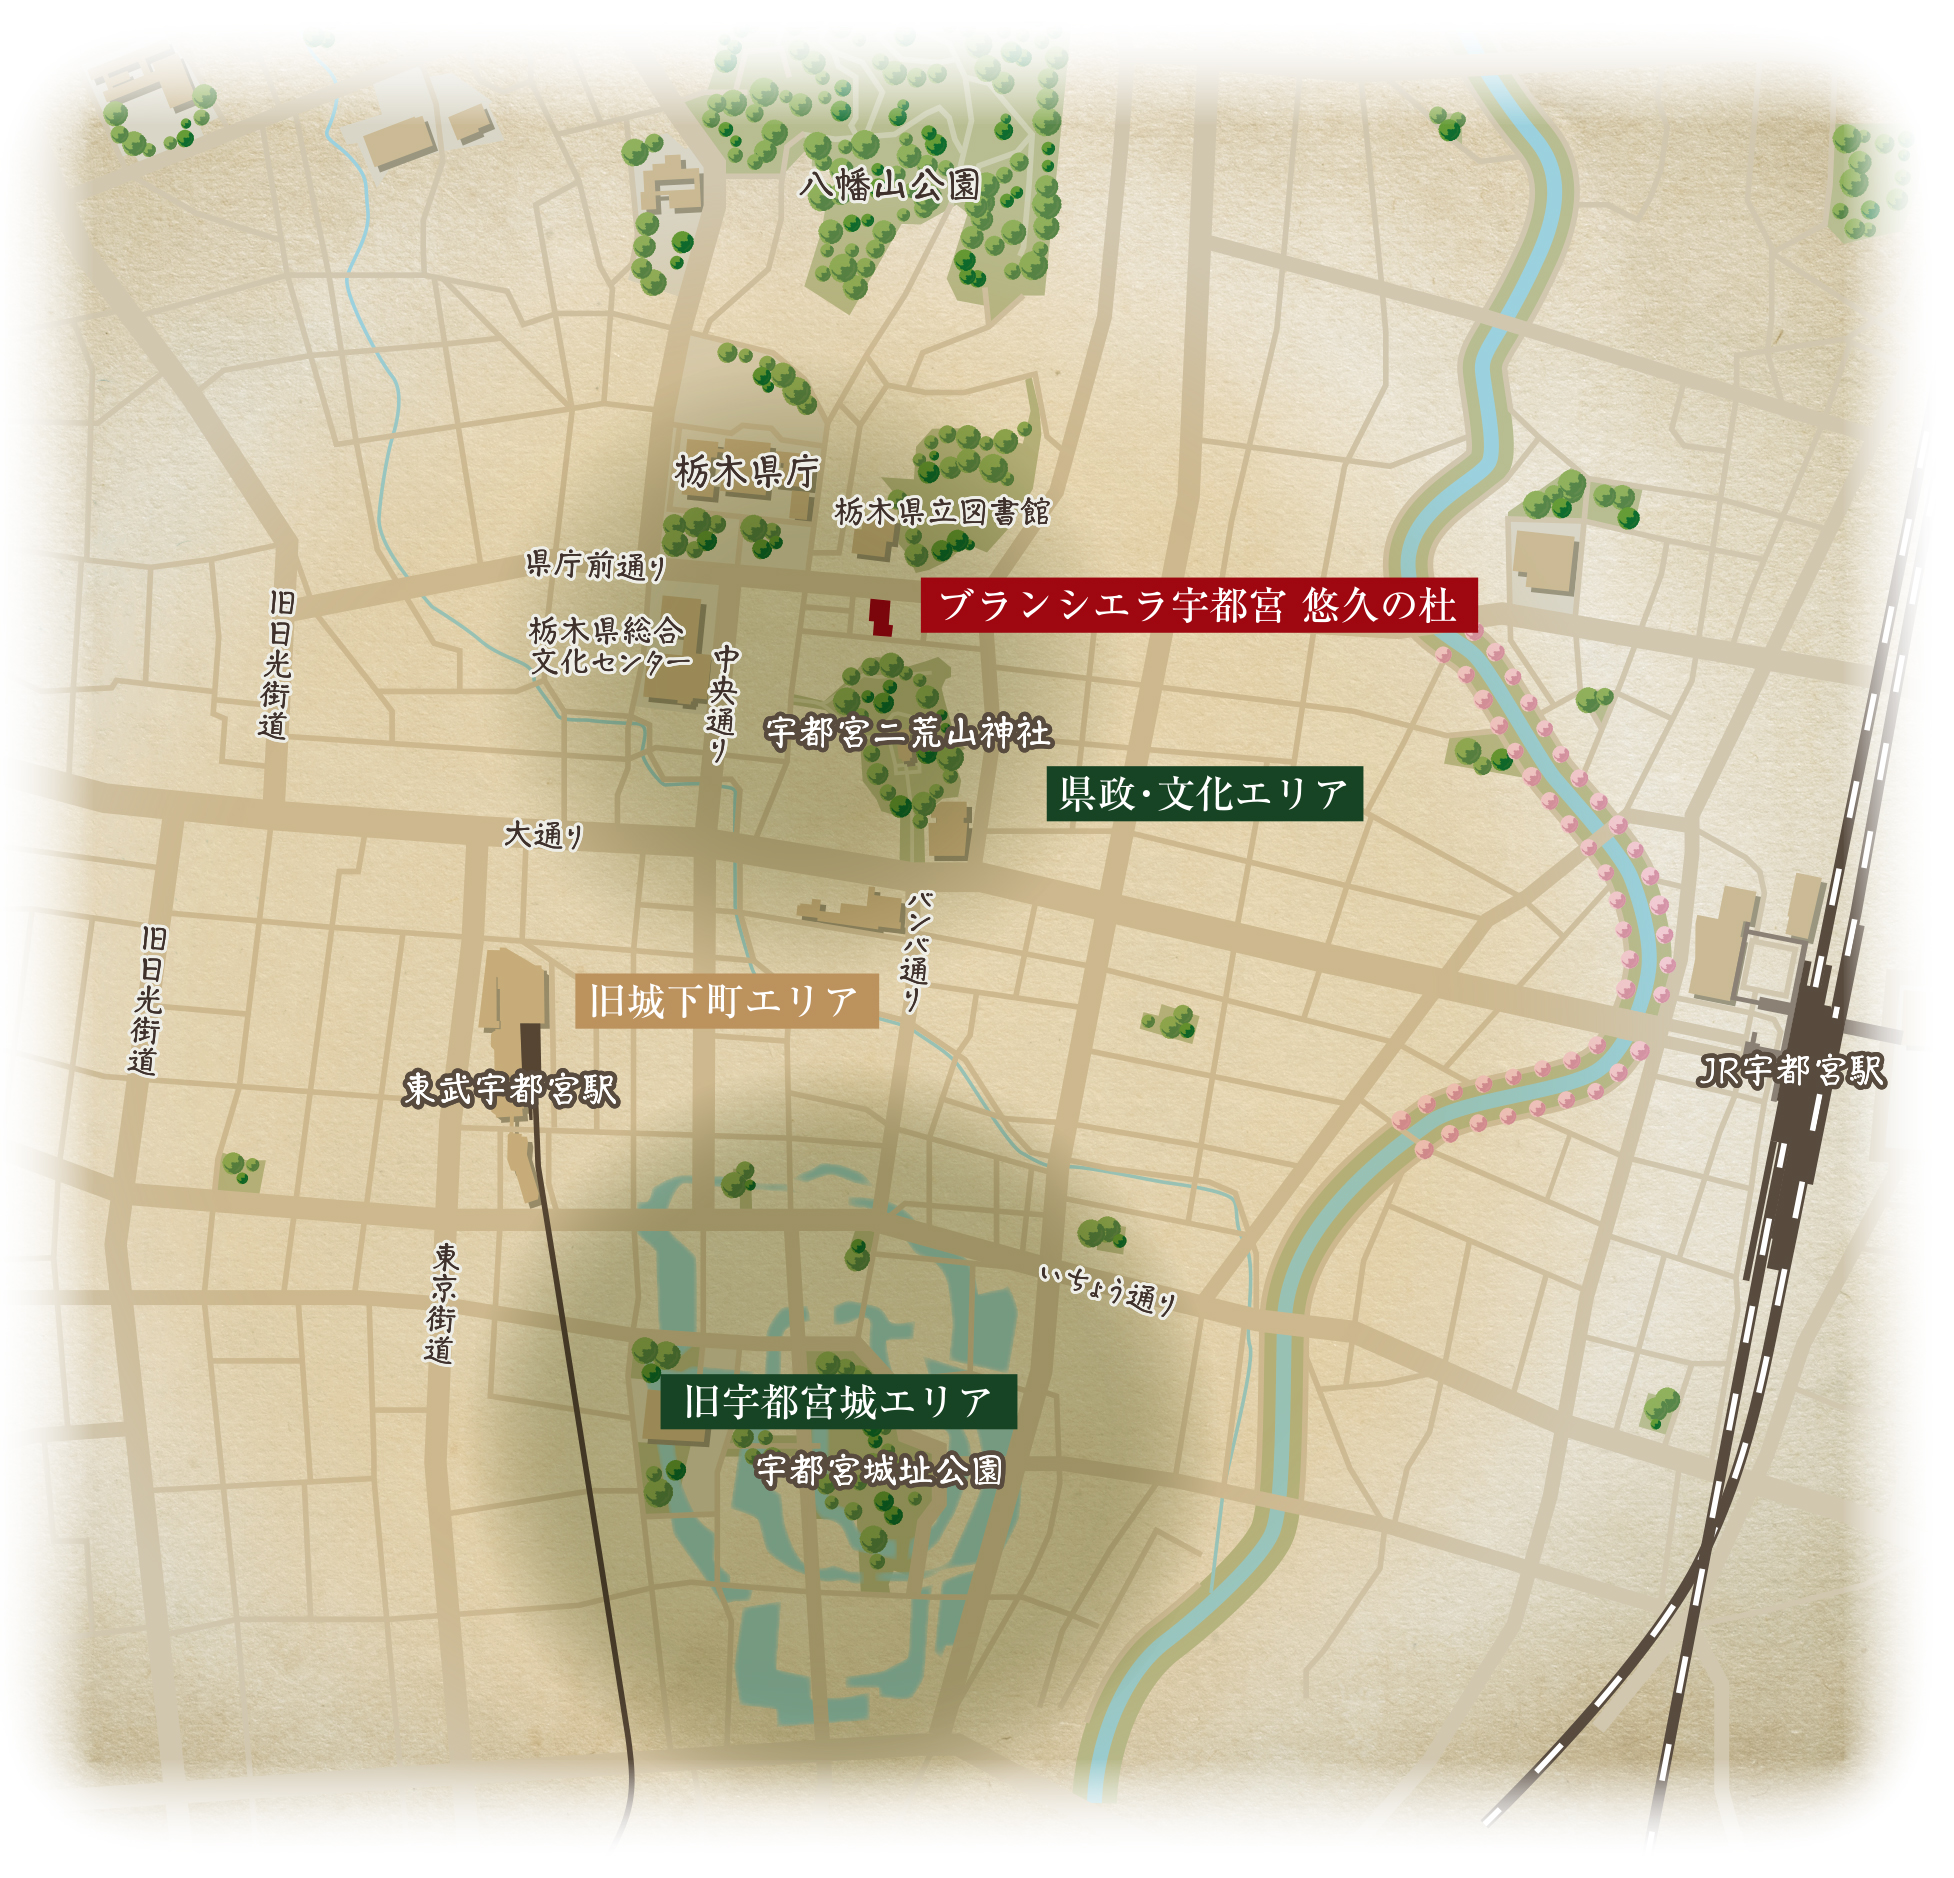 ブランシエラ宇都宮の立地概念図